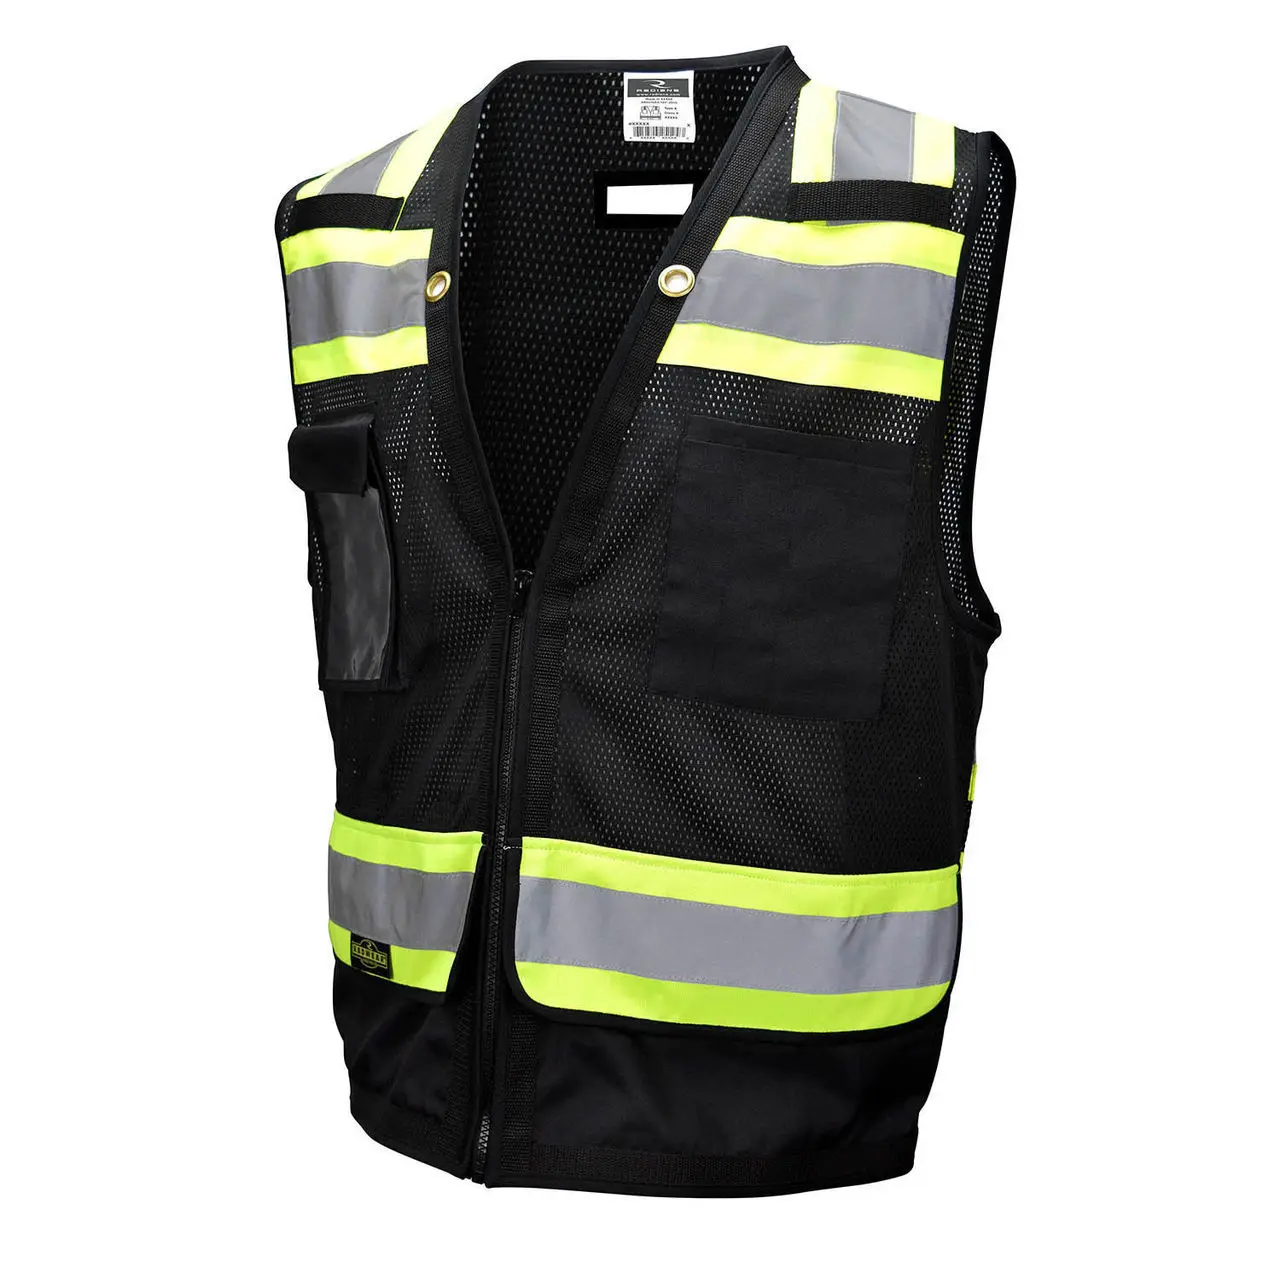 Adult Construction Worker Vest ANSI Class 2 Mesh Back Hi Vis Surveyor Vest